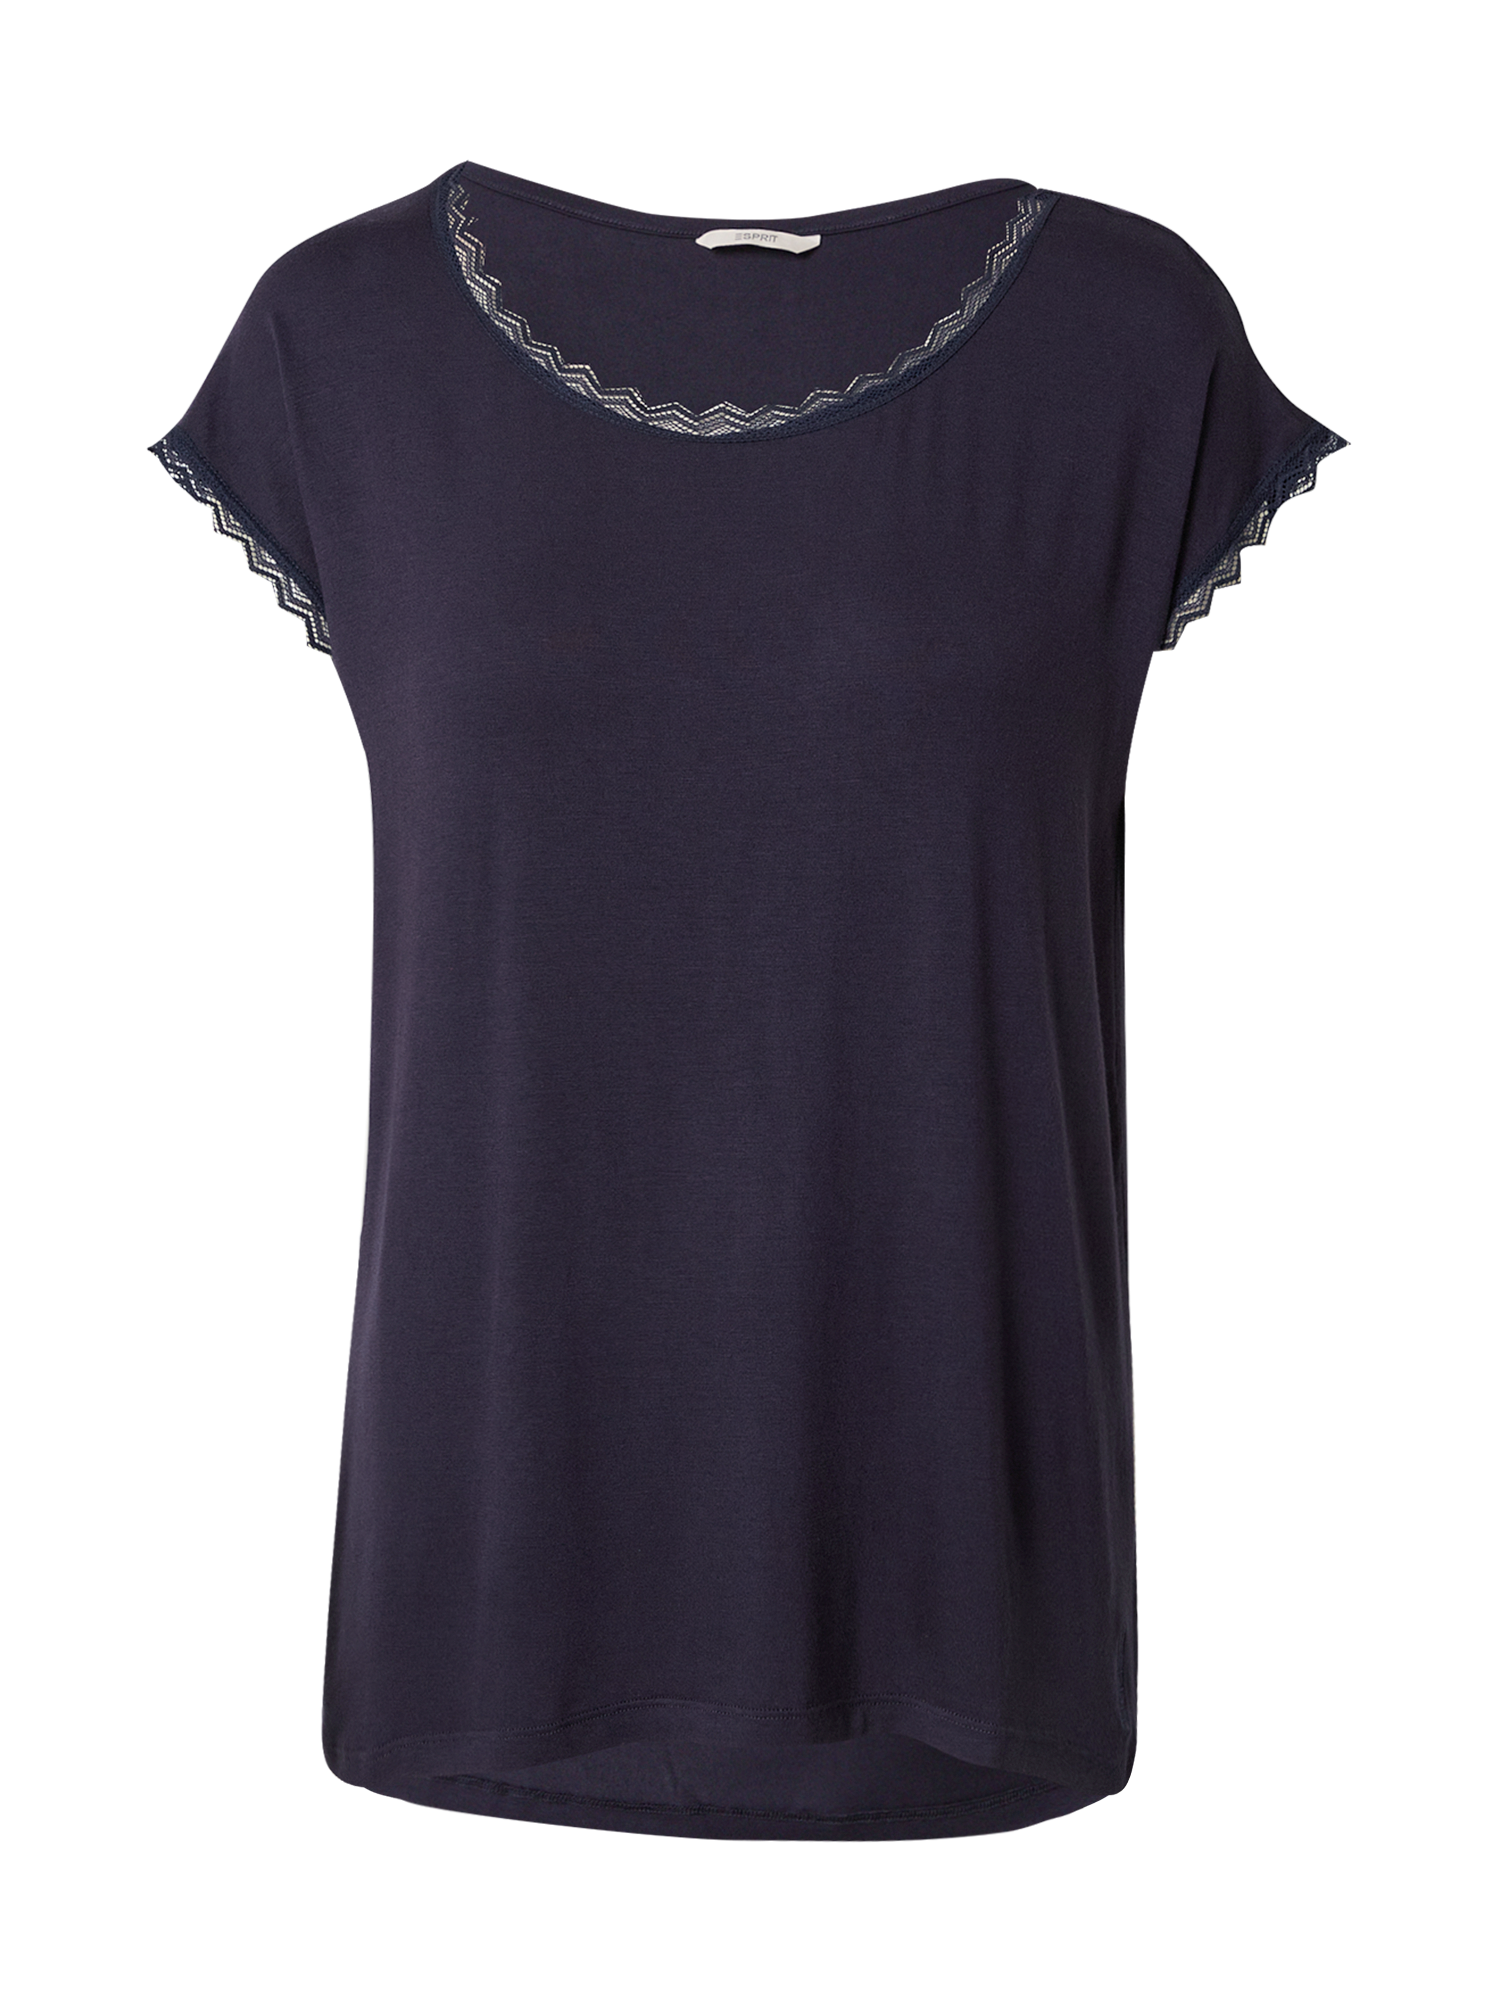 Odzież Kobiety Esprit Bodywear Koszulka do spania w kolorze Granatowym 